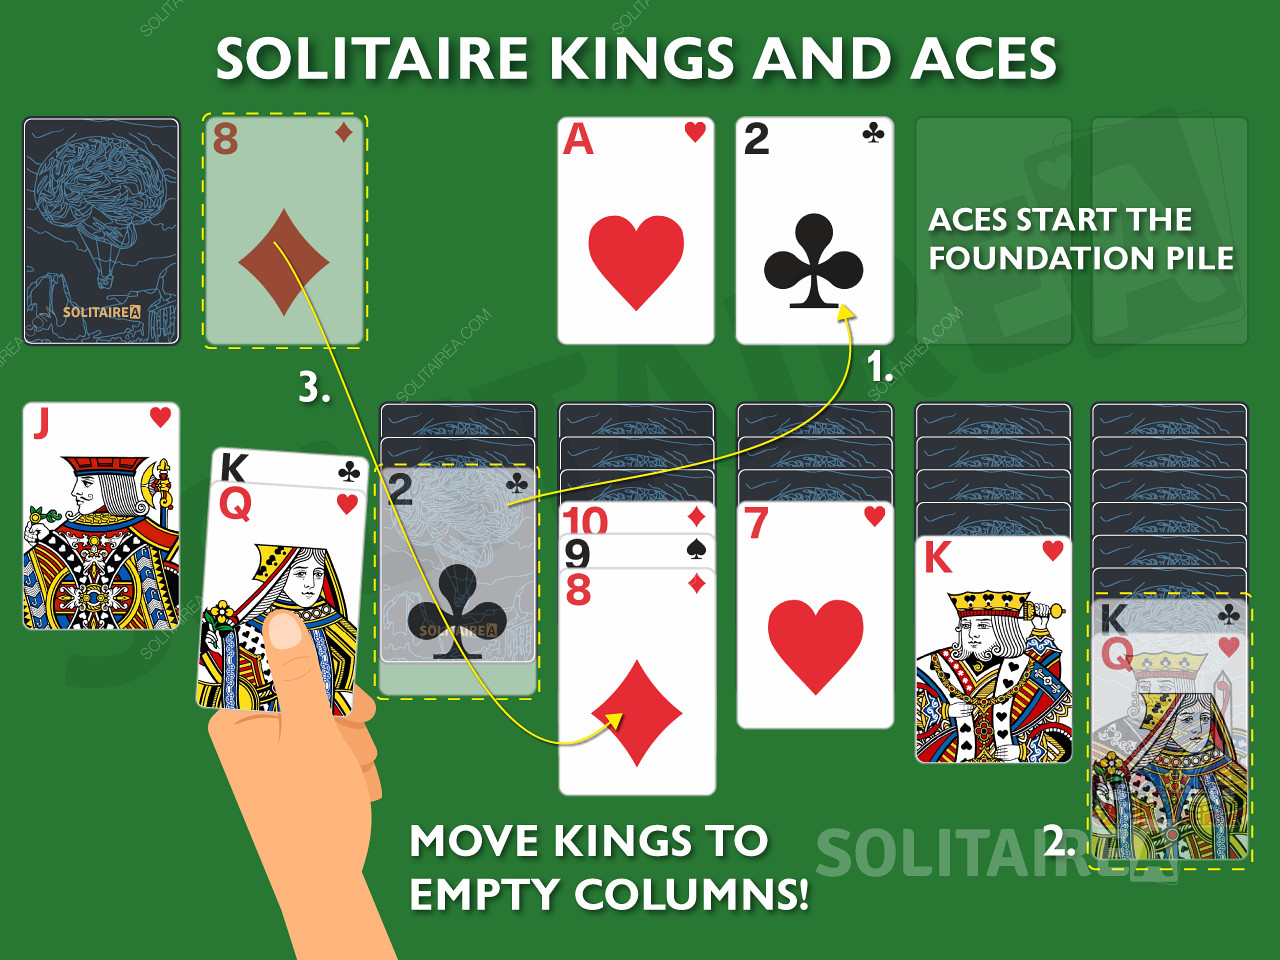 Les Rois et les As sont des cartes importantes dans le Solitaire car elles permettent des mouvements uniques.